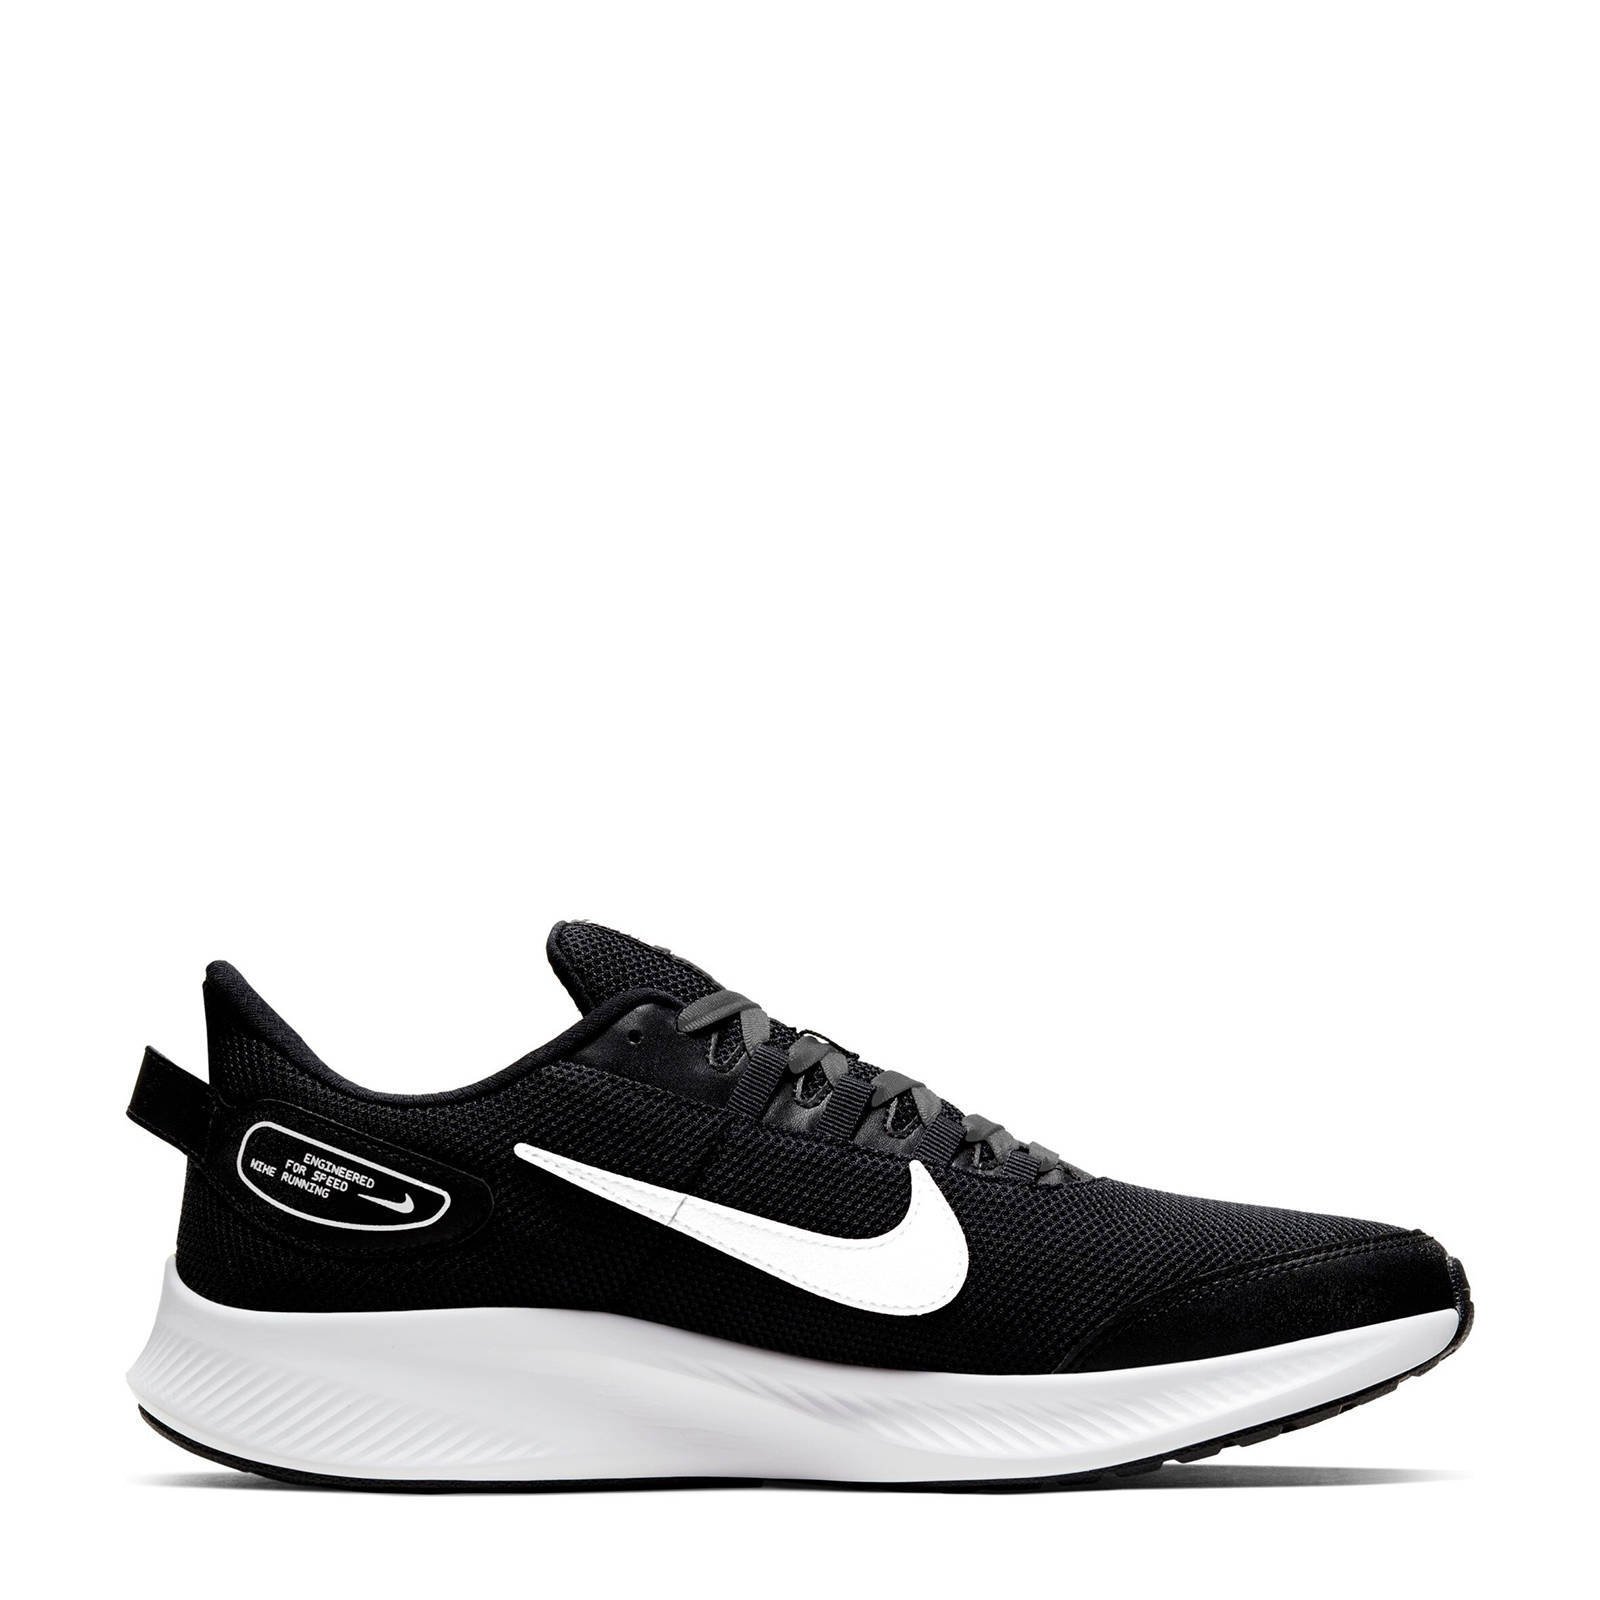 Nike Run All Day 2 hardloopschoenen zwart/wit/grijs online kopen